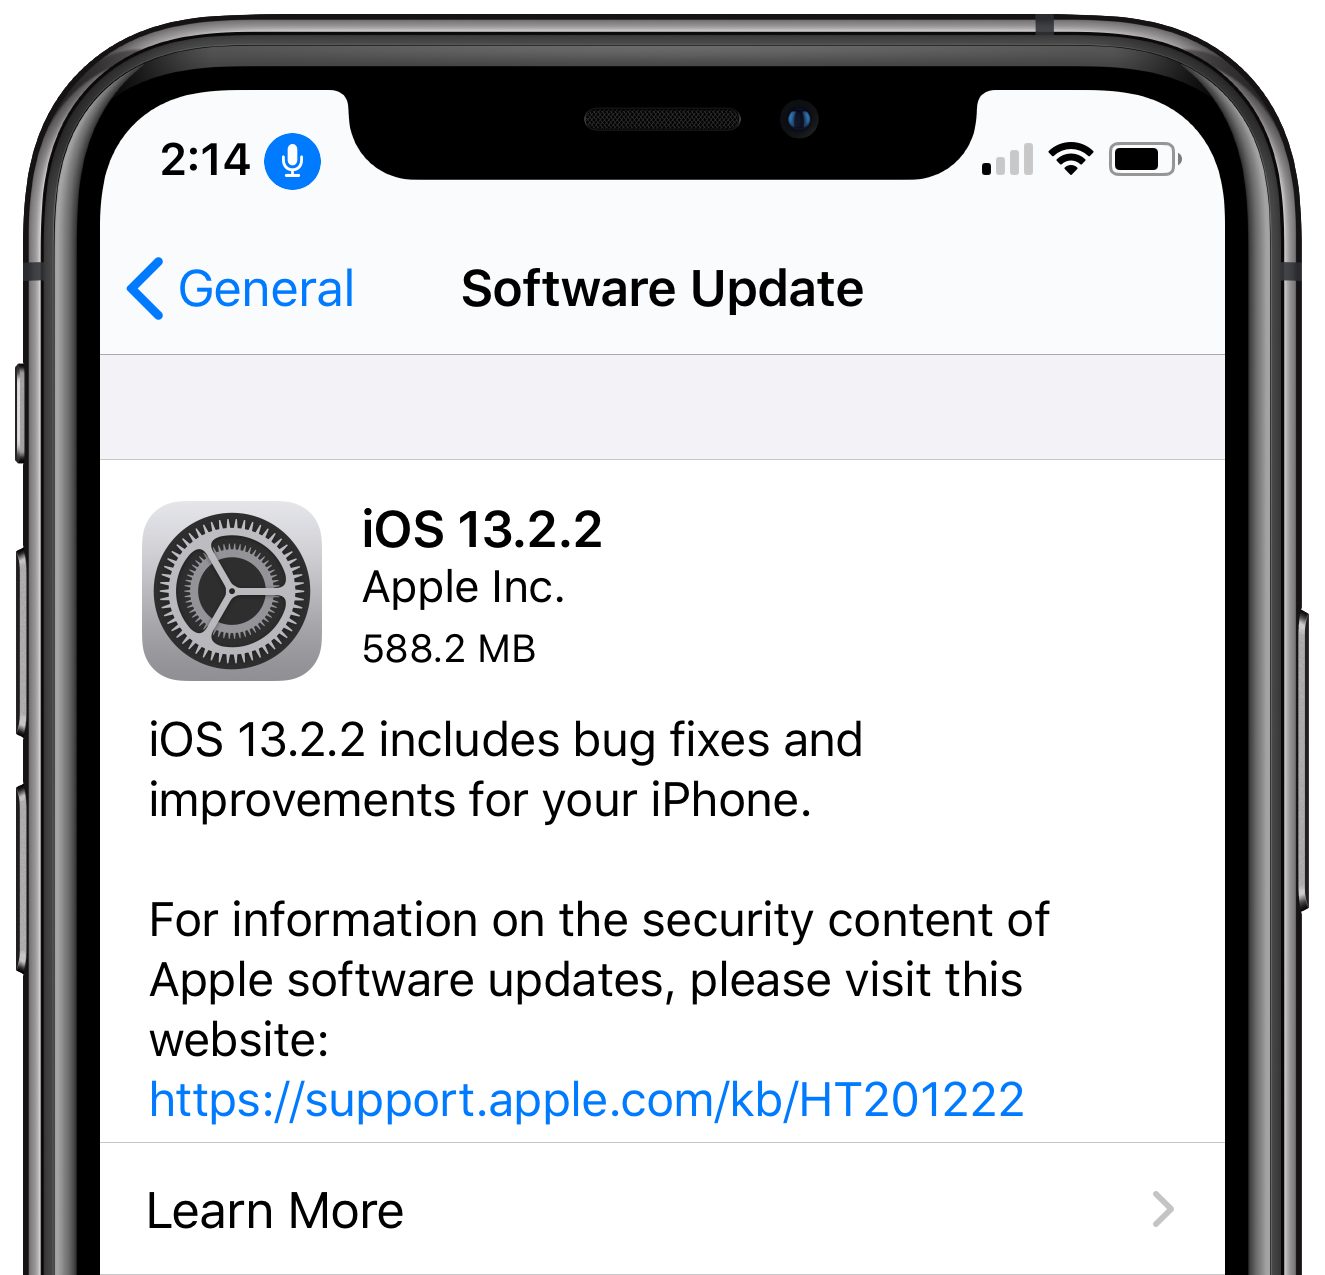 iOS 13.2.2: Phiên bản iOS 13.2.2 mới nhất đã được ra mắt với nhiều tính năng cải tiến đáng chú ý, giúp tăng tốc hiệu suất và sửa các lỗi trên iPhone. Cùng xem hình ảnh để tìm hiểu thêm! 